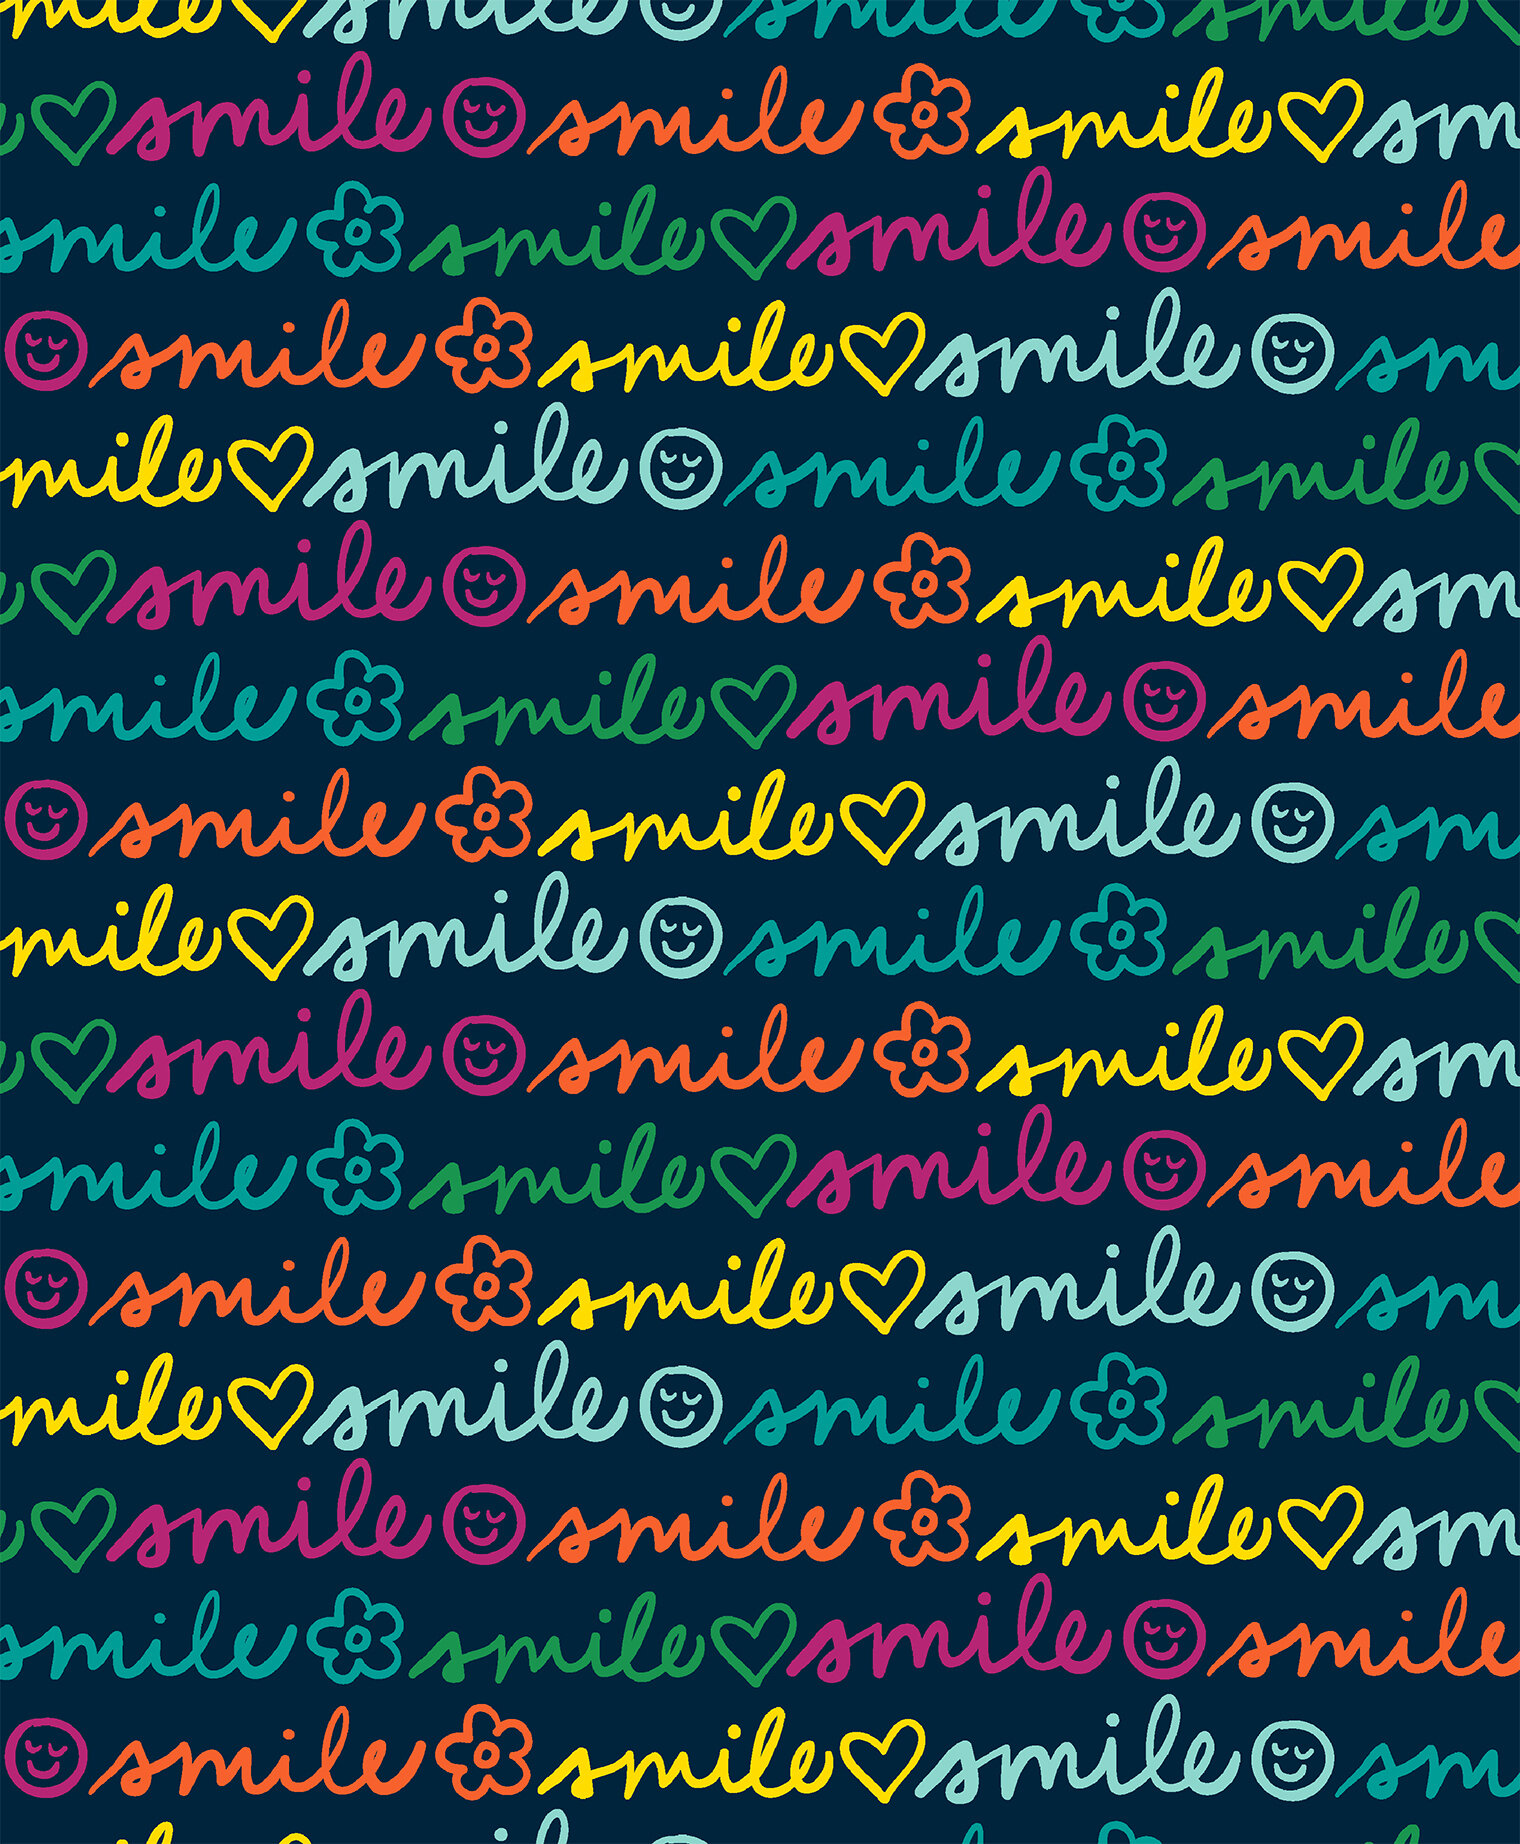 miles of smiles.jpg